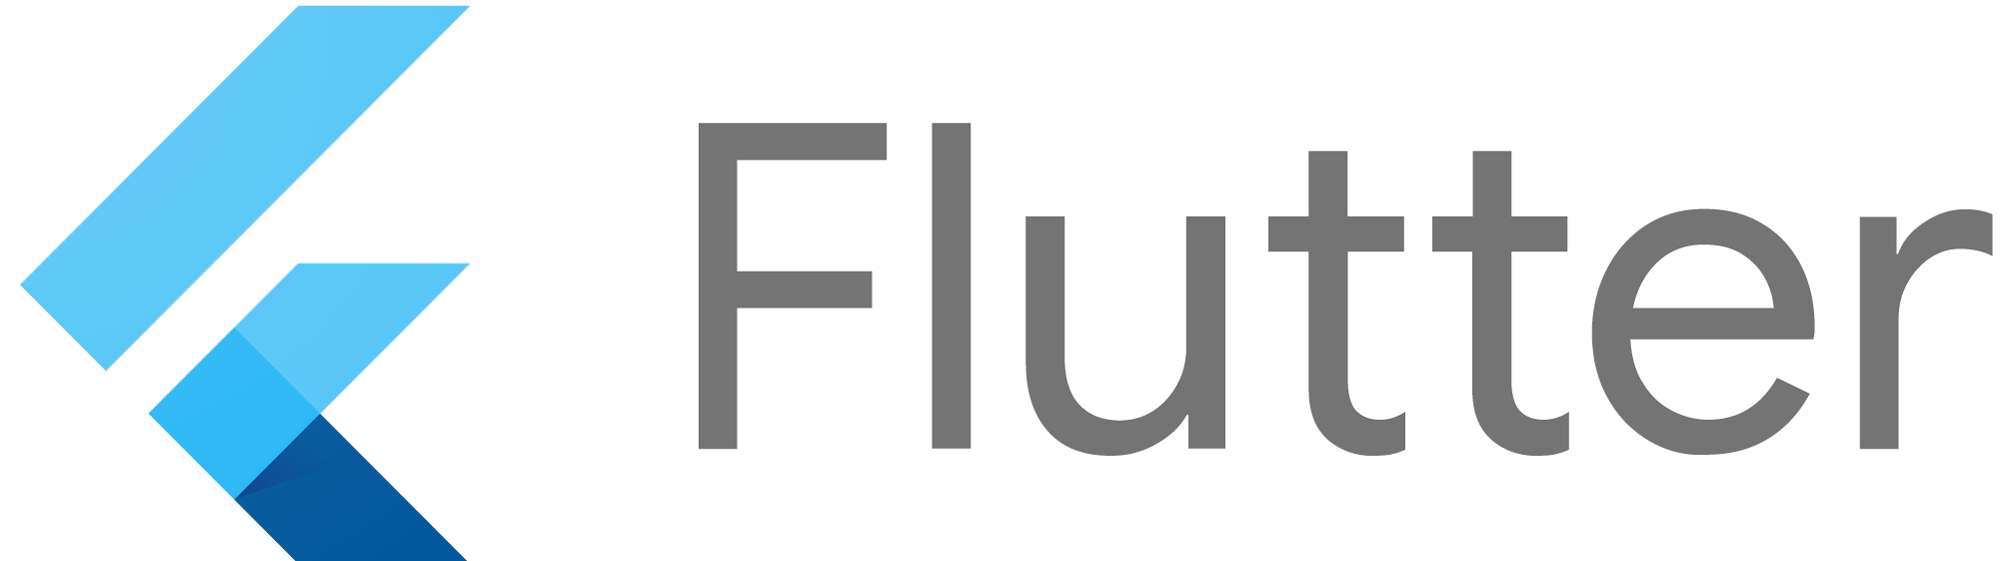 Flutter logo with text Flutter